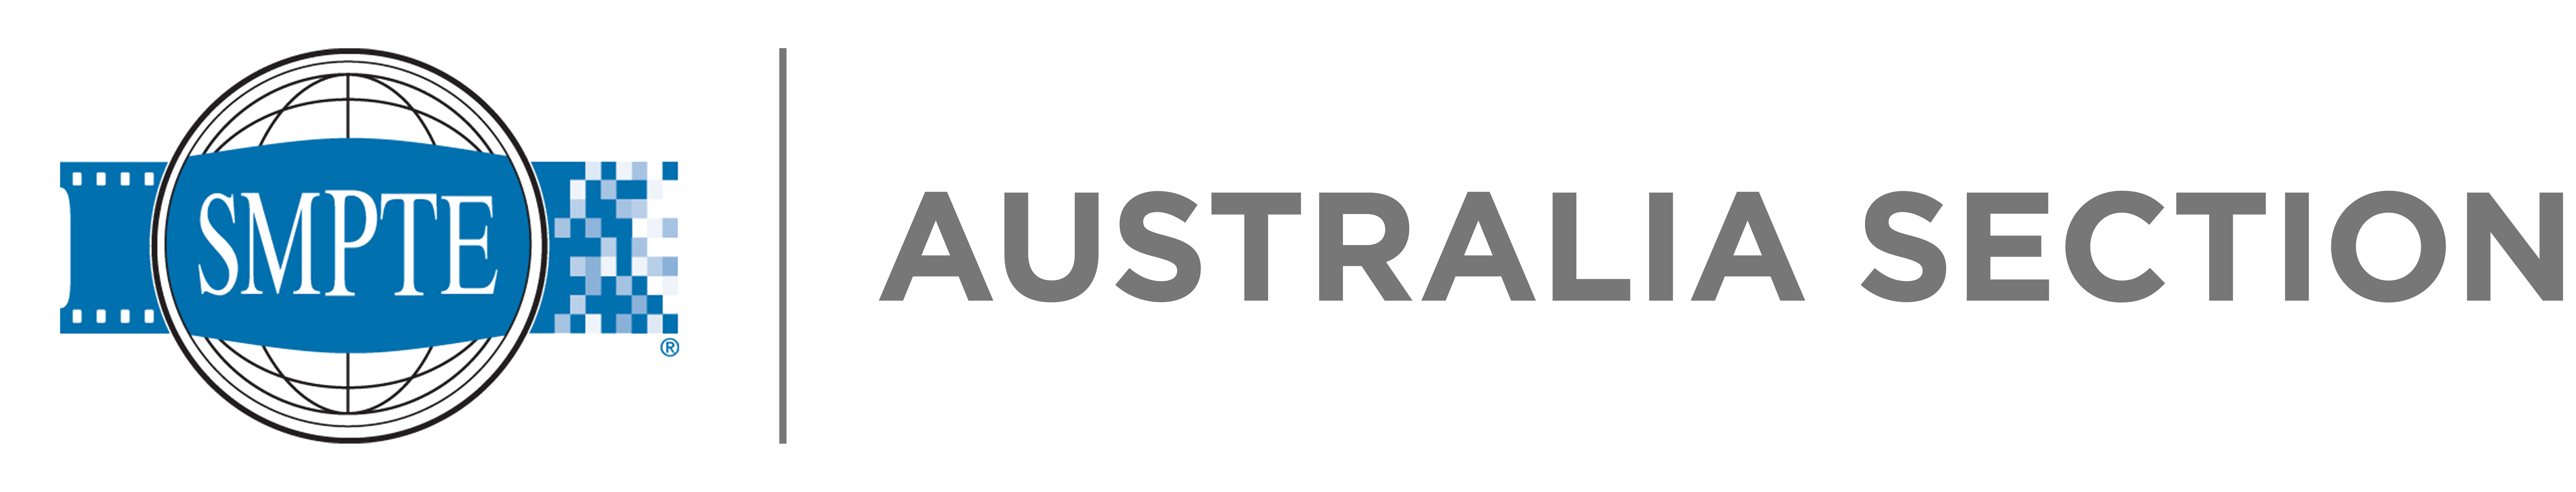 SMPTE Australia Section Logo horizontal